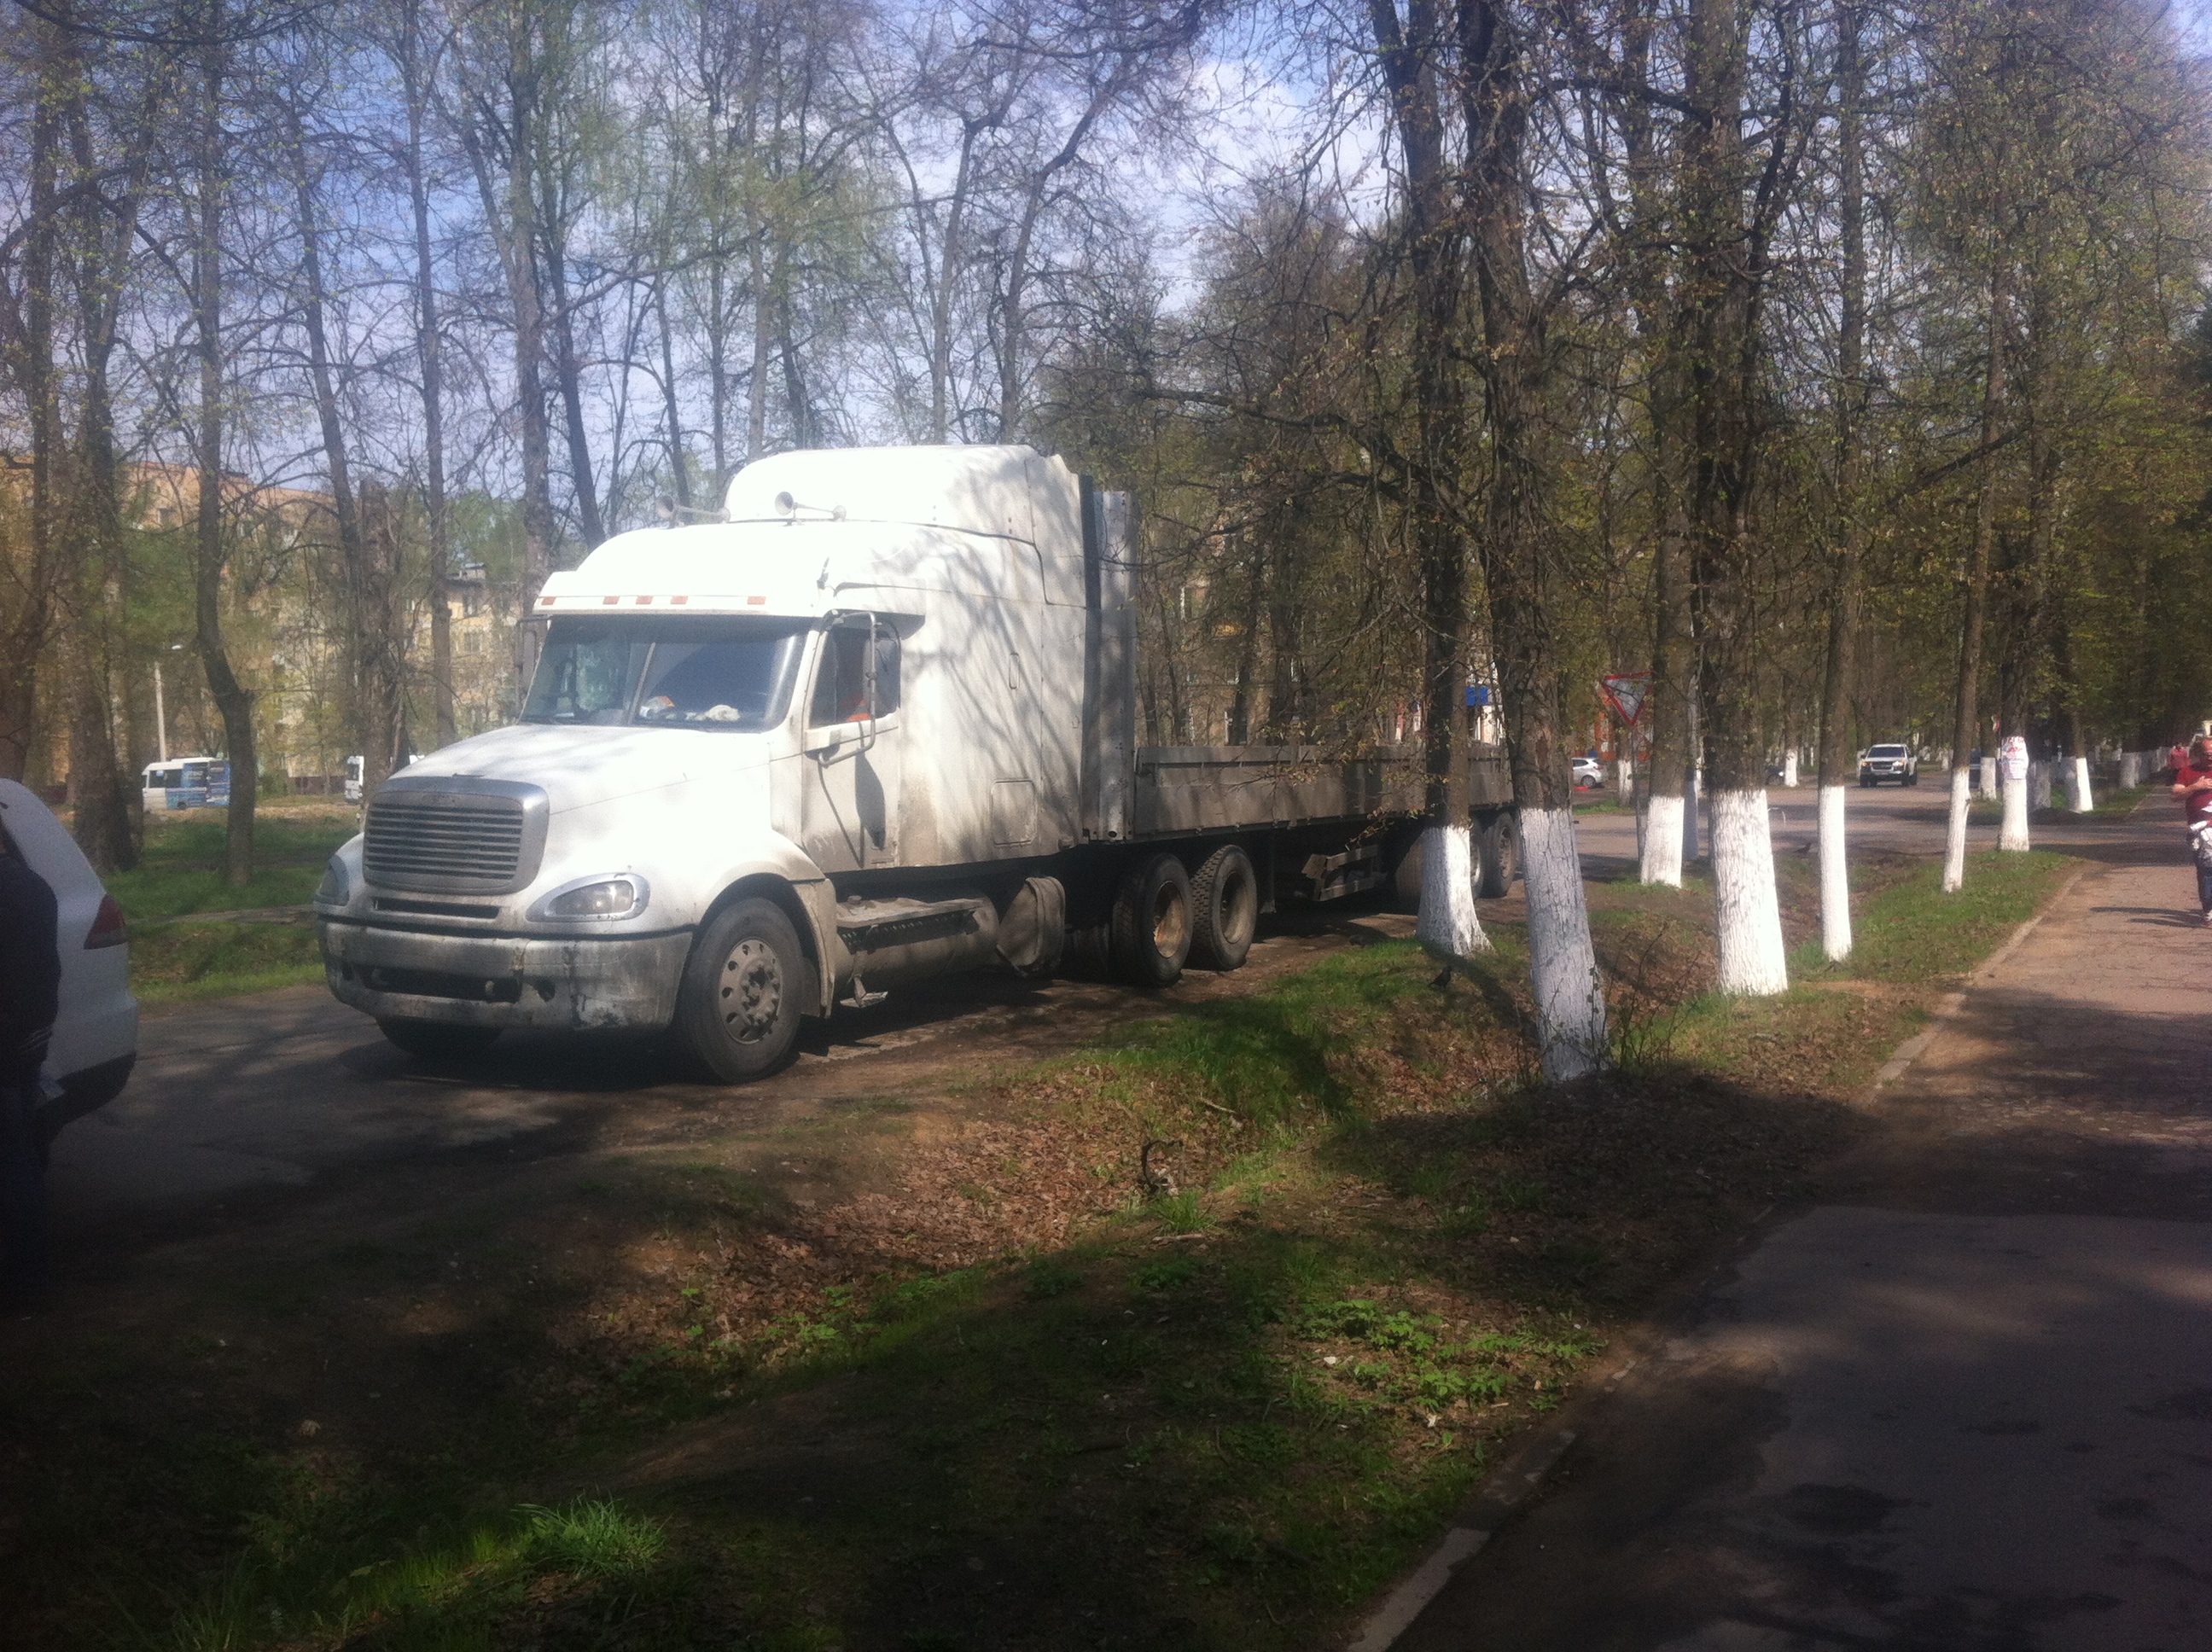 Фото сделано сегодня в 10.30.  В это время на Маслова стоял еще один тежелый грузовик, но фото вышло крайне неудачным.